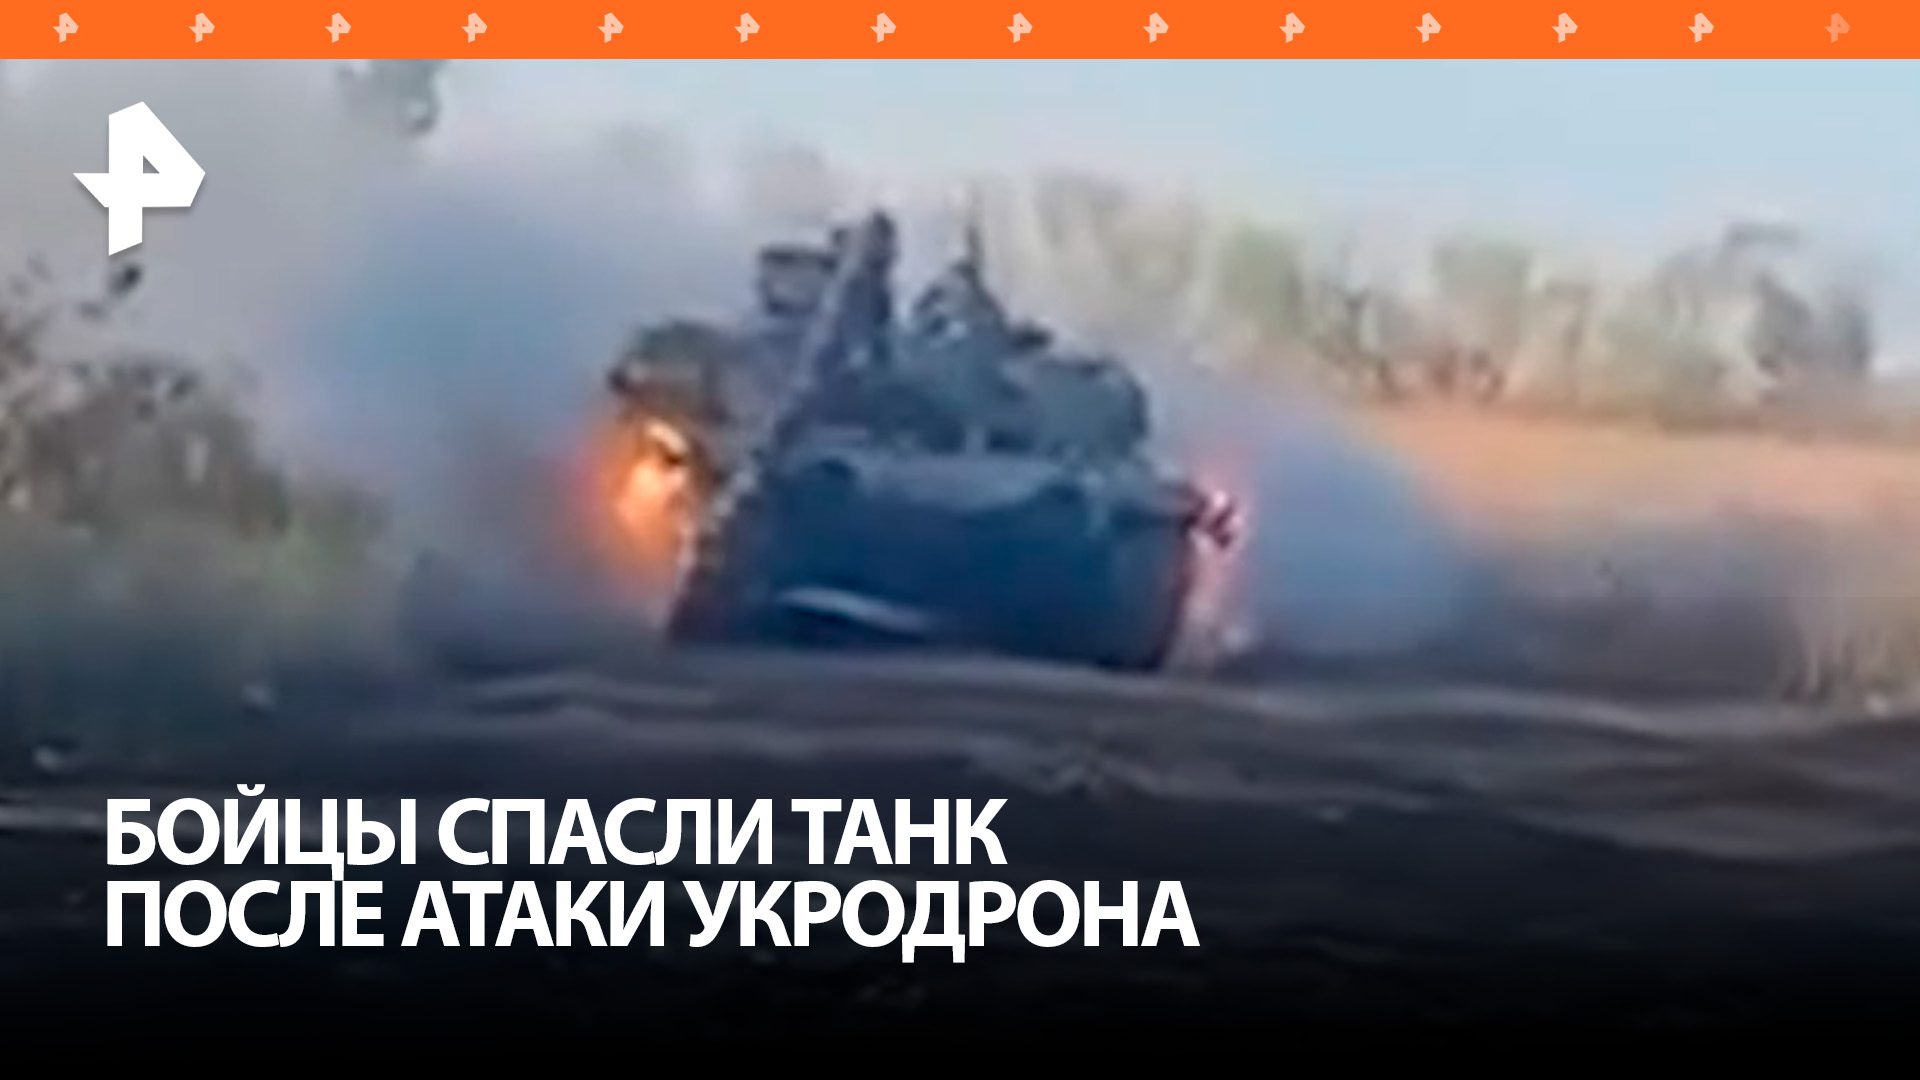 Российские военные эвакуировали горящий танк после атаки украинского дрона / РЕН Новости